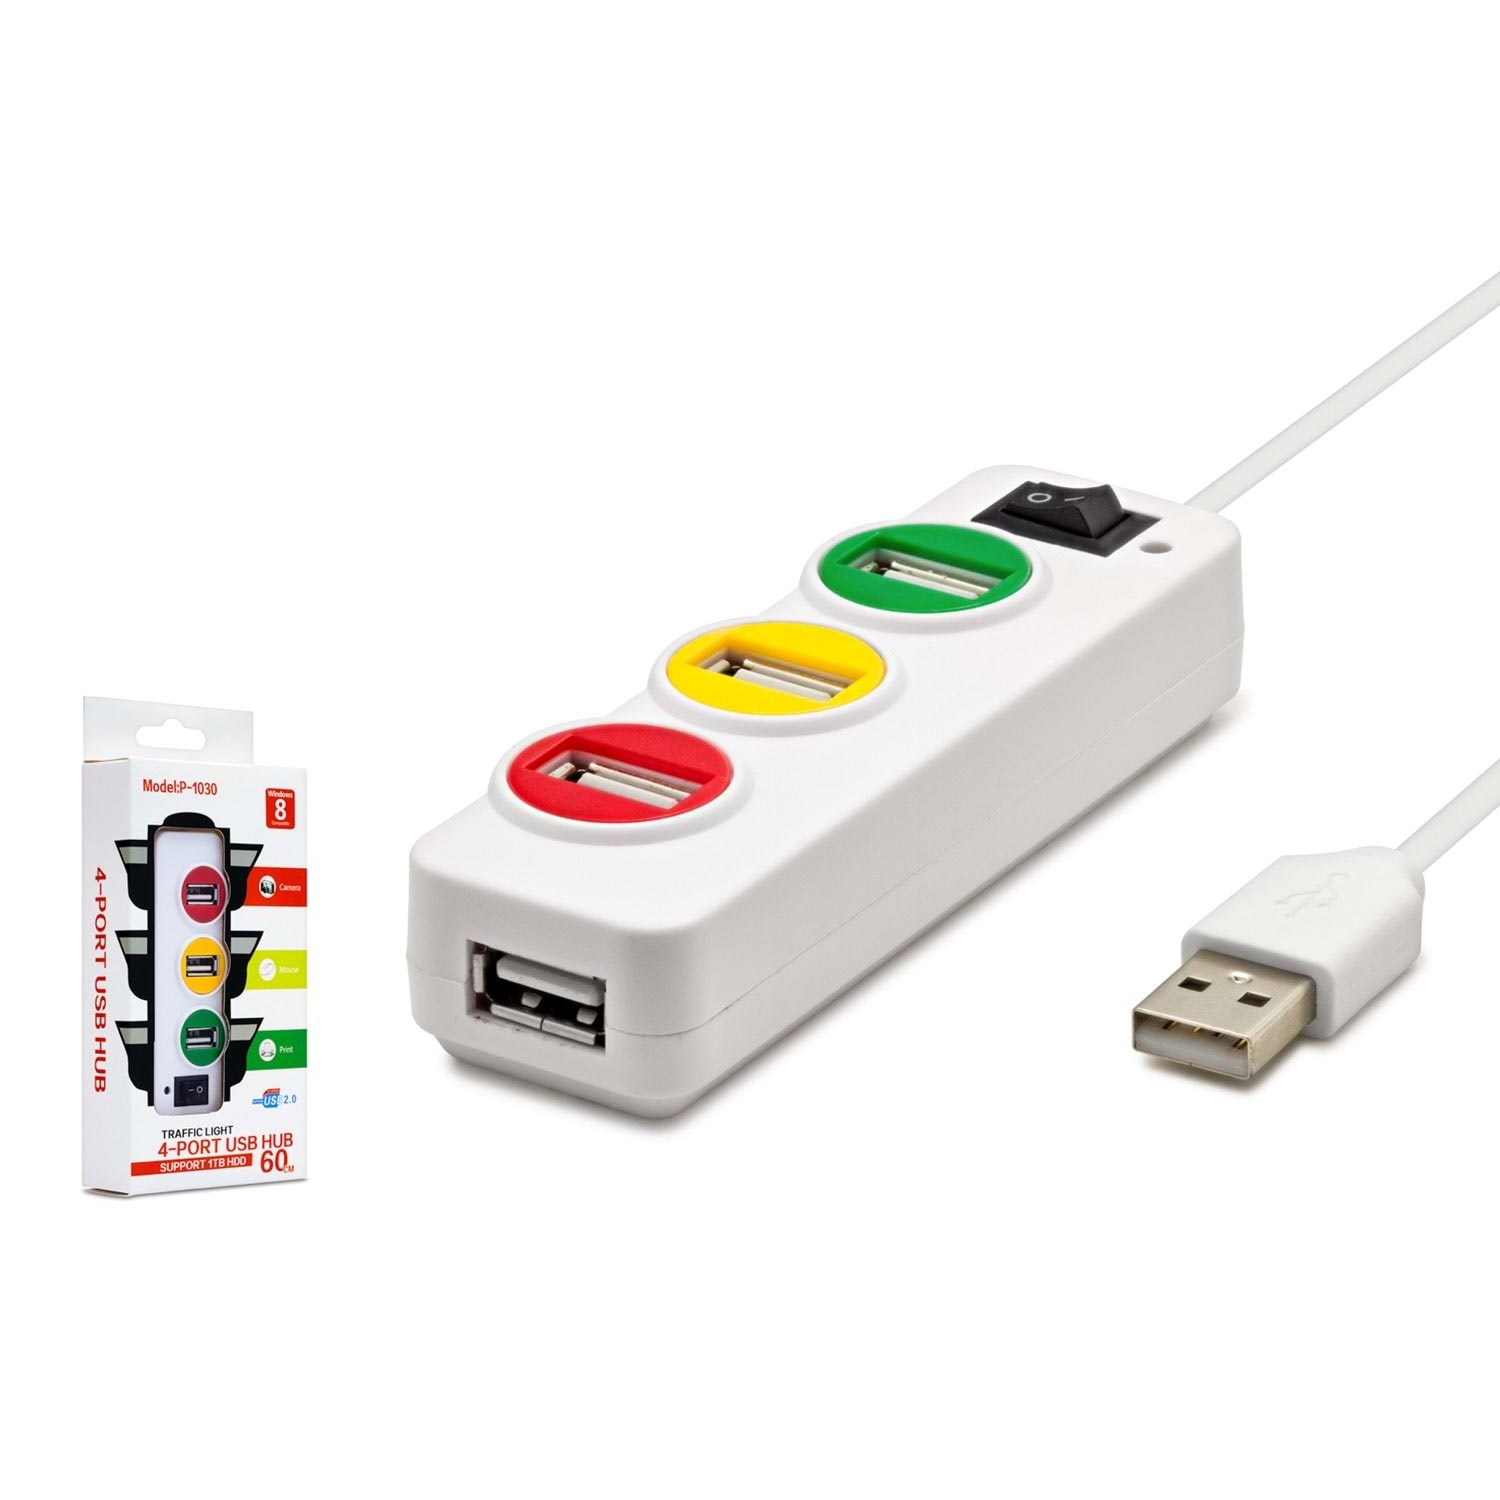 USB 2.0 HUB ÇOKLAYICI 4 PORT ANAHTARLI IŞIKLI HADRON HDX-7018